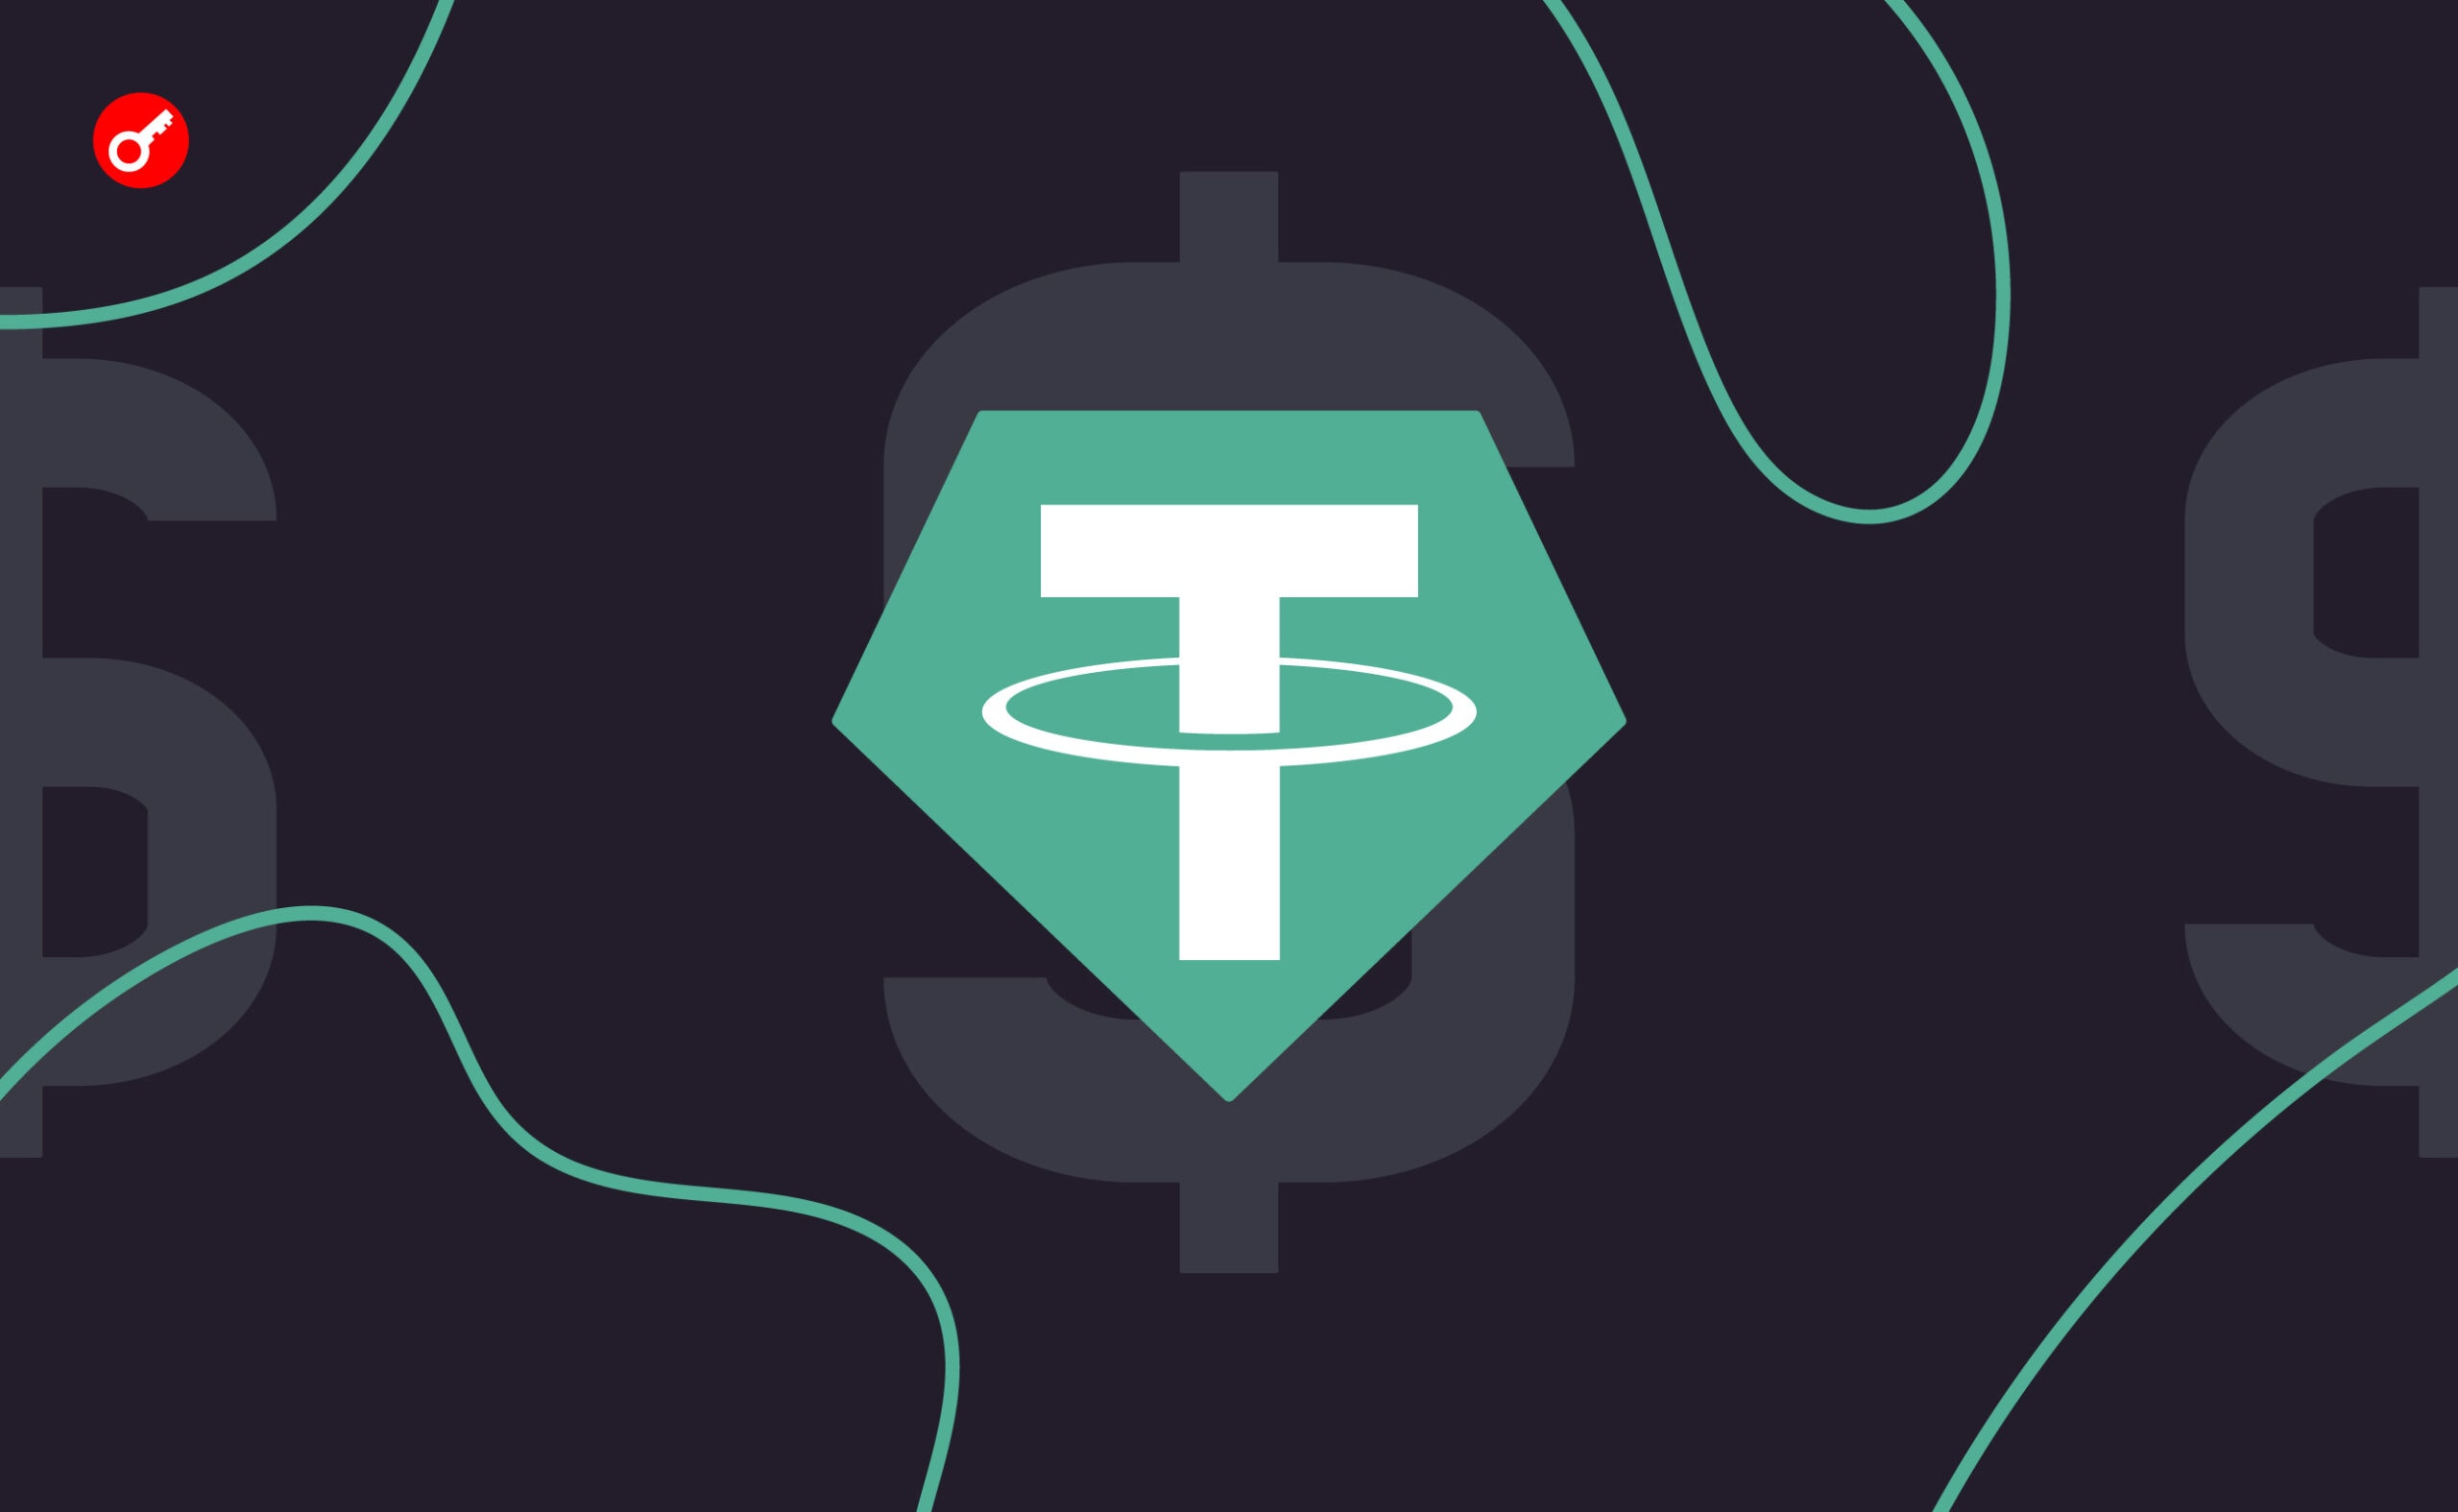 Tether пополнила резервы на 1 млрд USDT в сети Tron. Заглавный коллаж новости.